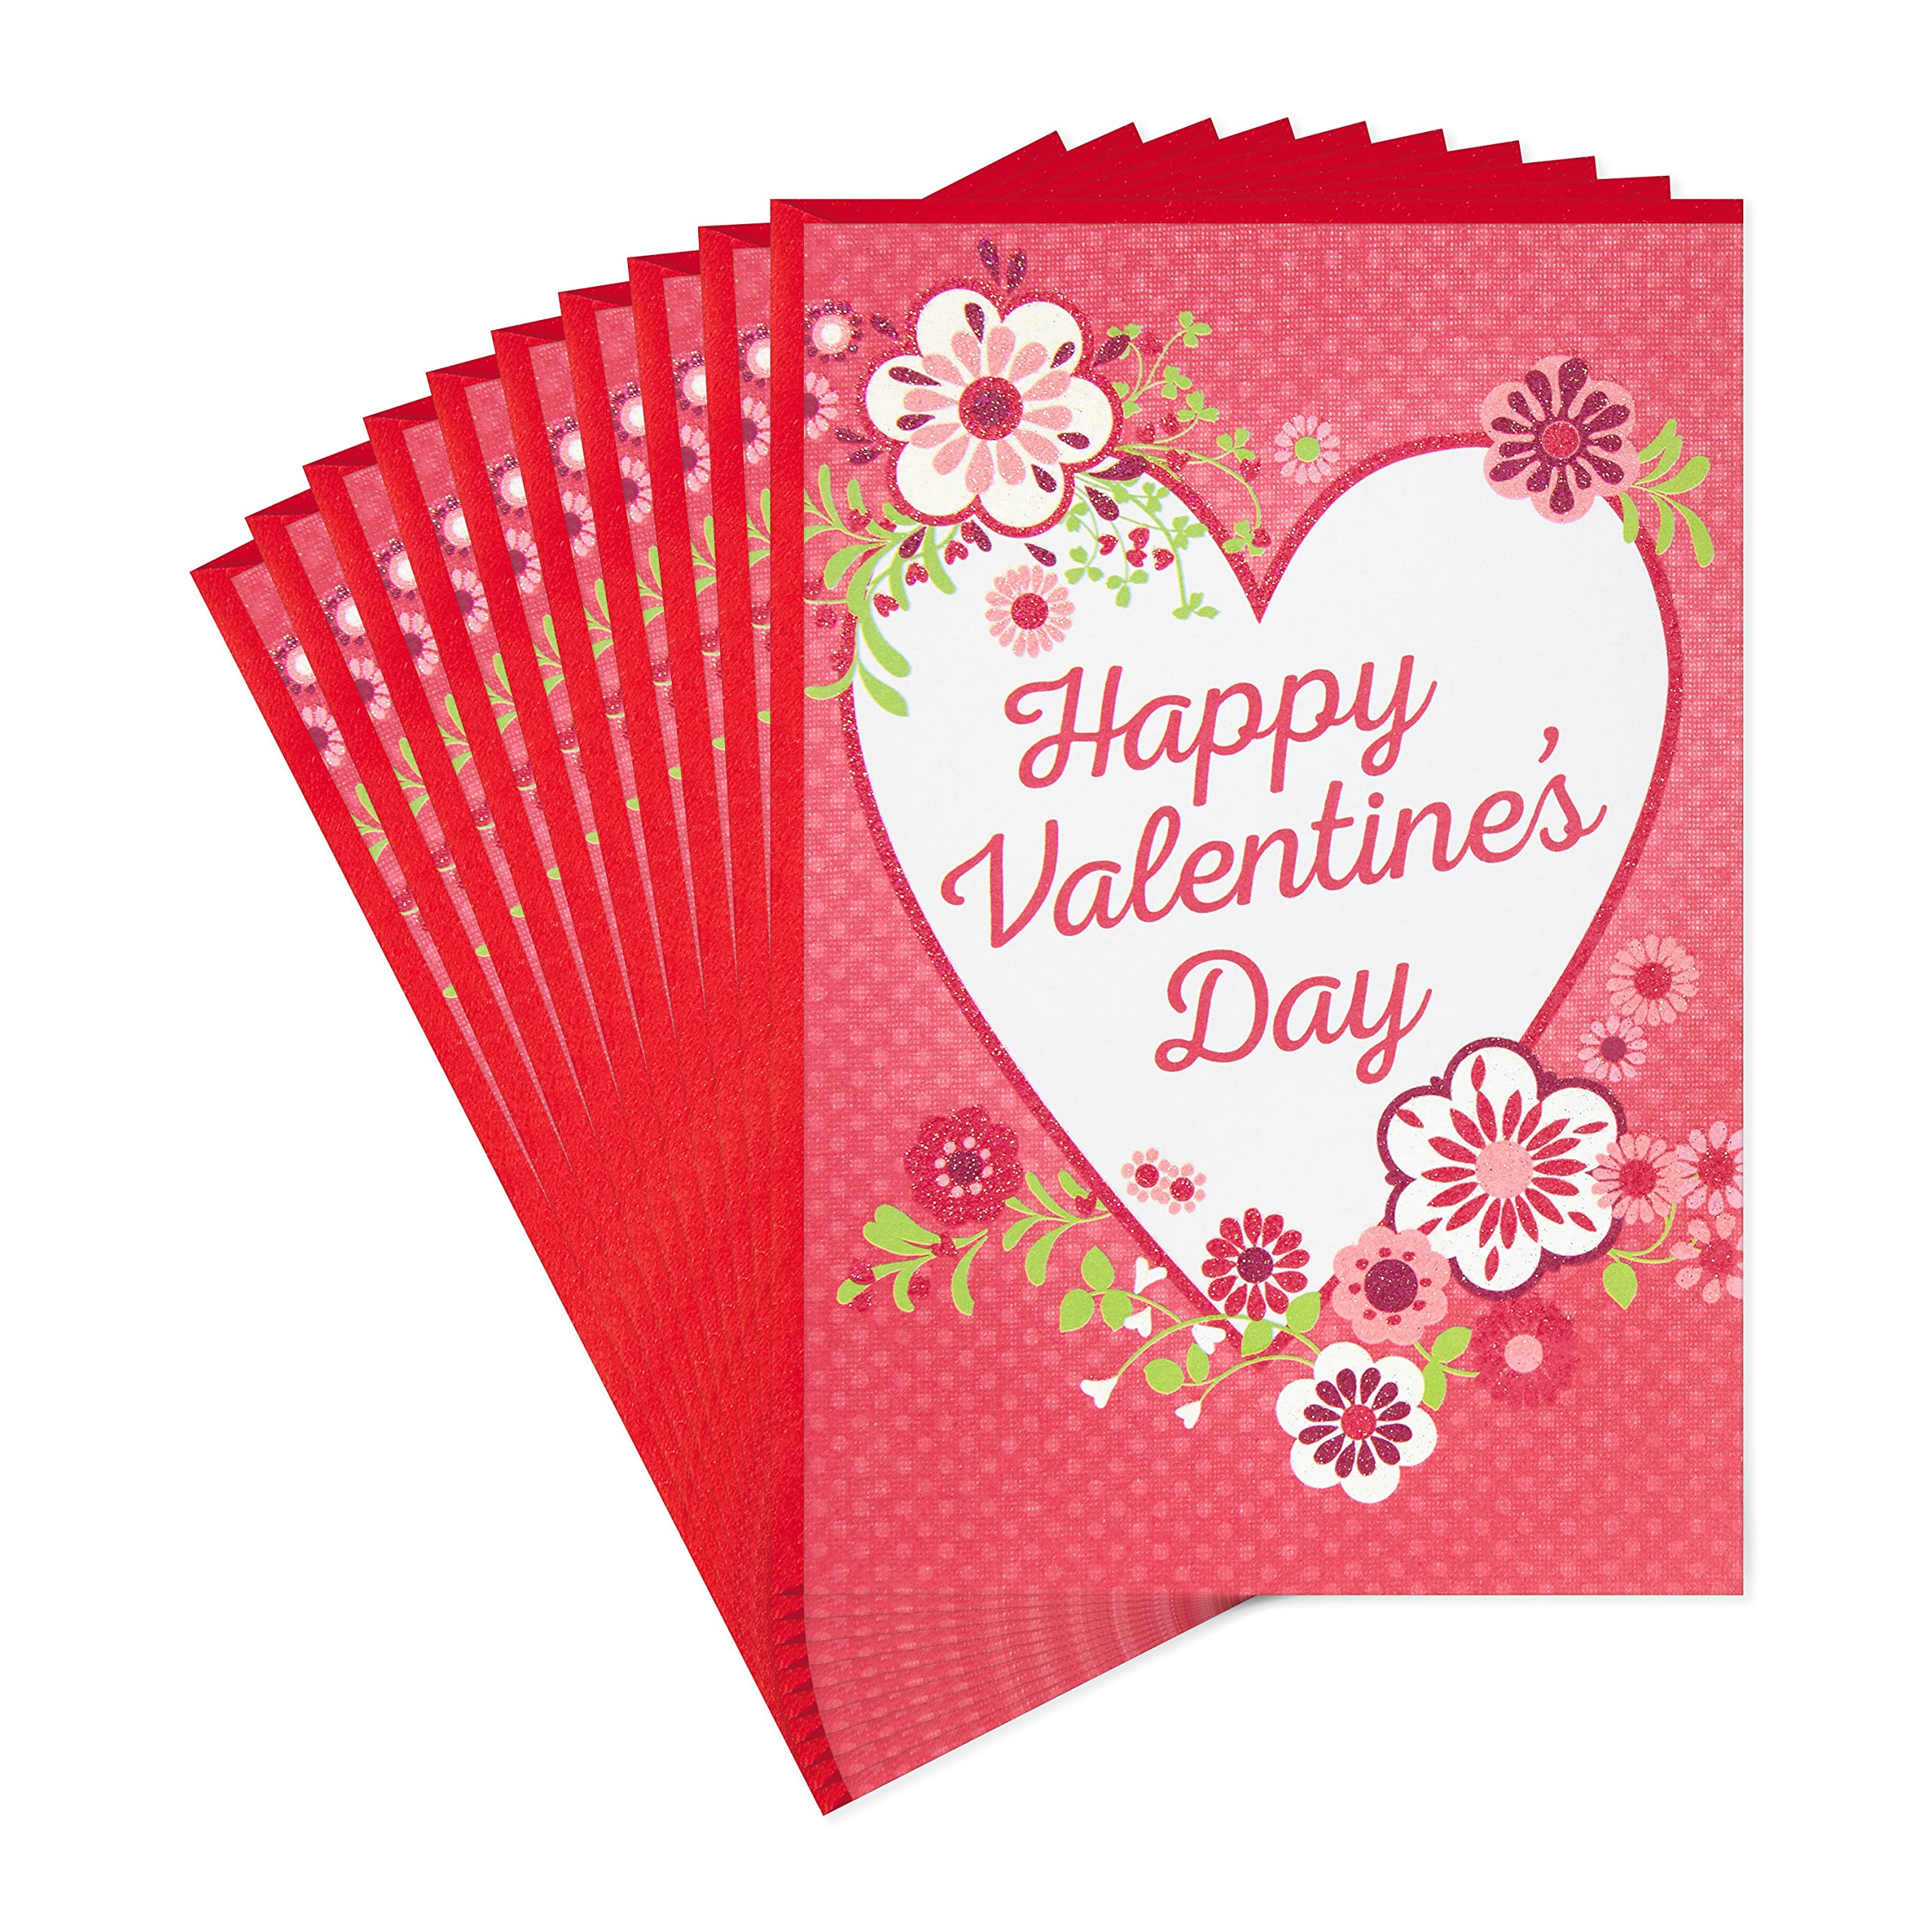 Hallmark Valentine's Day Cards